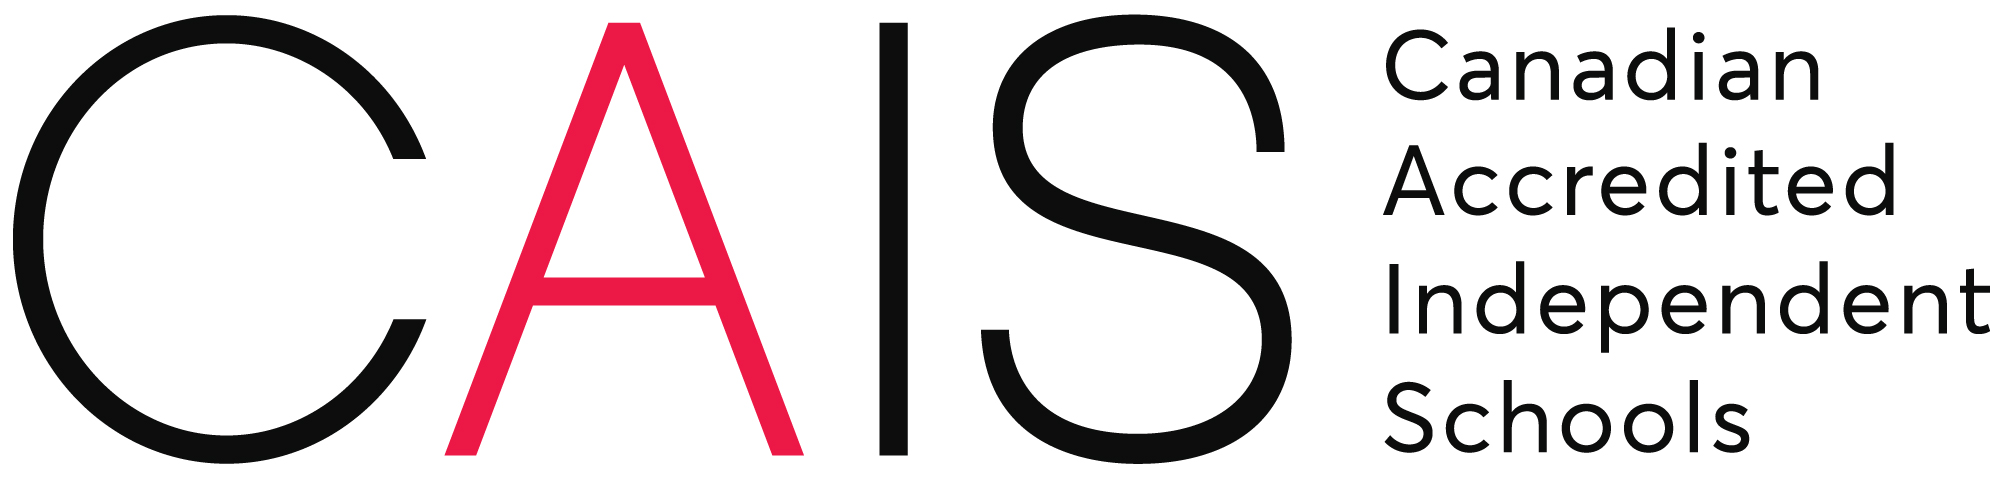 CAIS-logo-wtag-RGB-colour.jpg